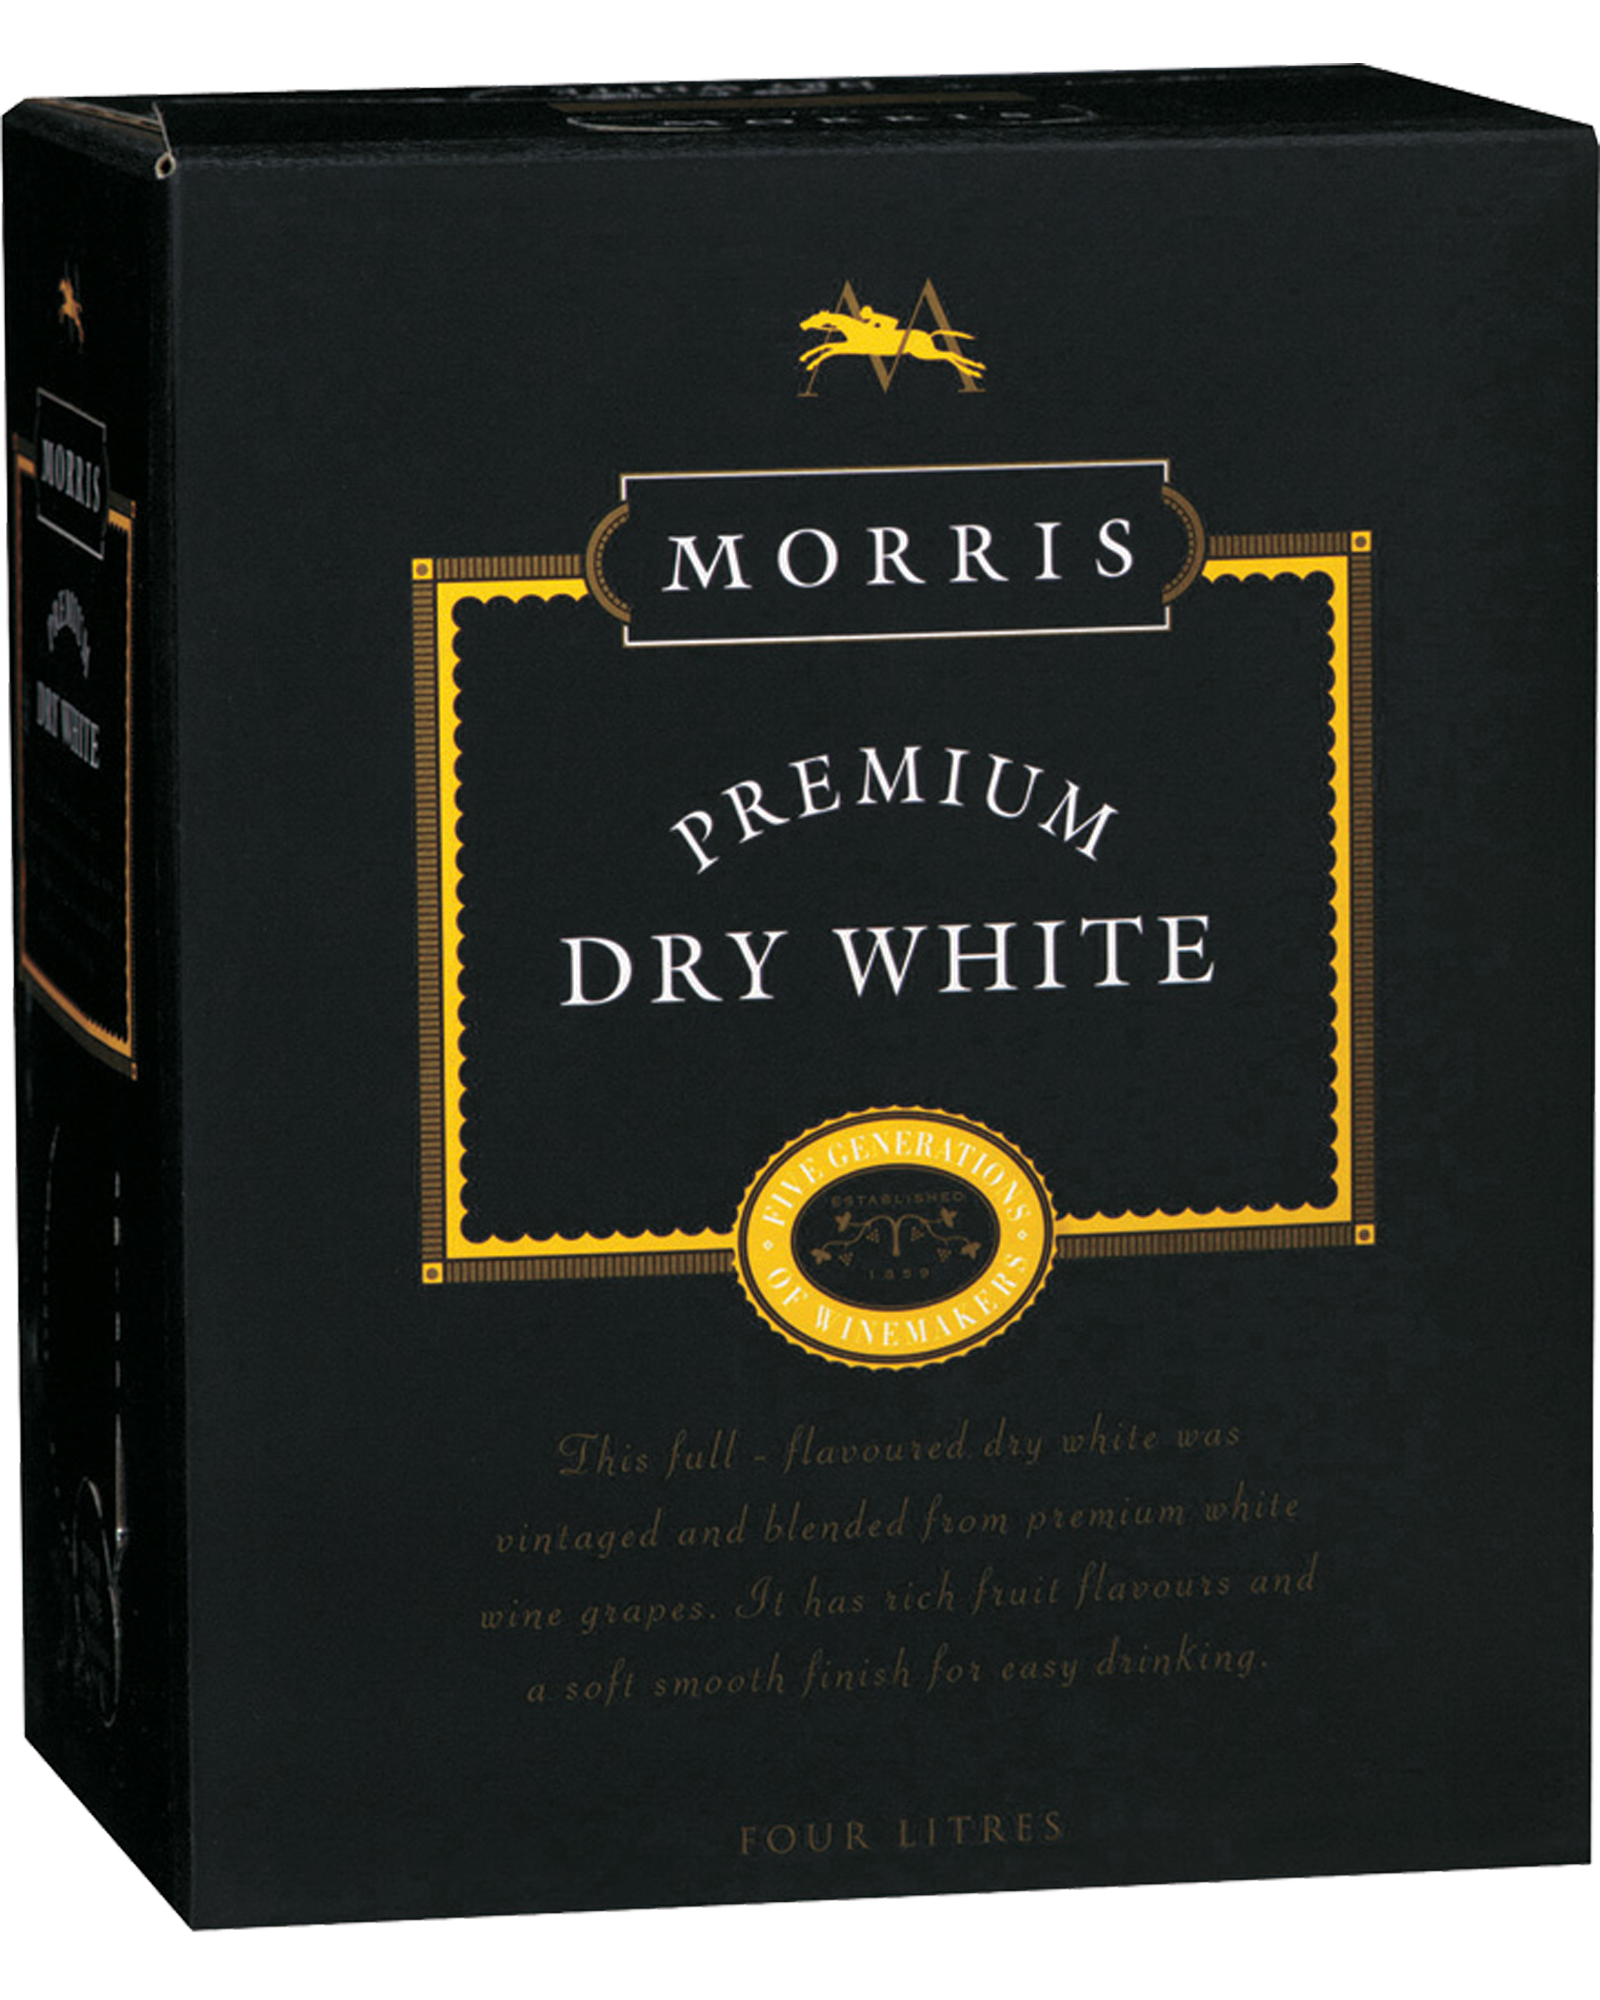 Morris Premium Dry White Cask 4L